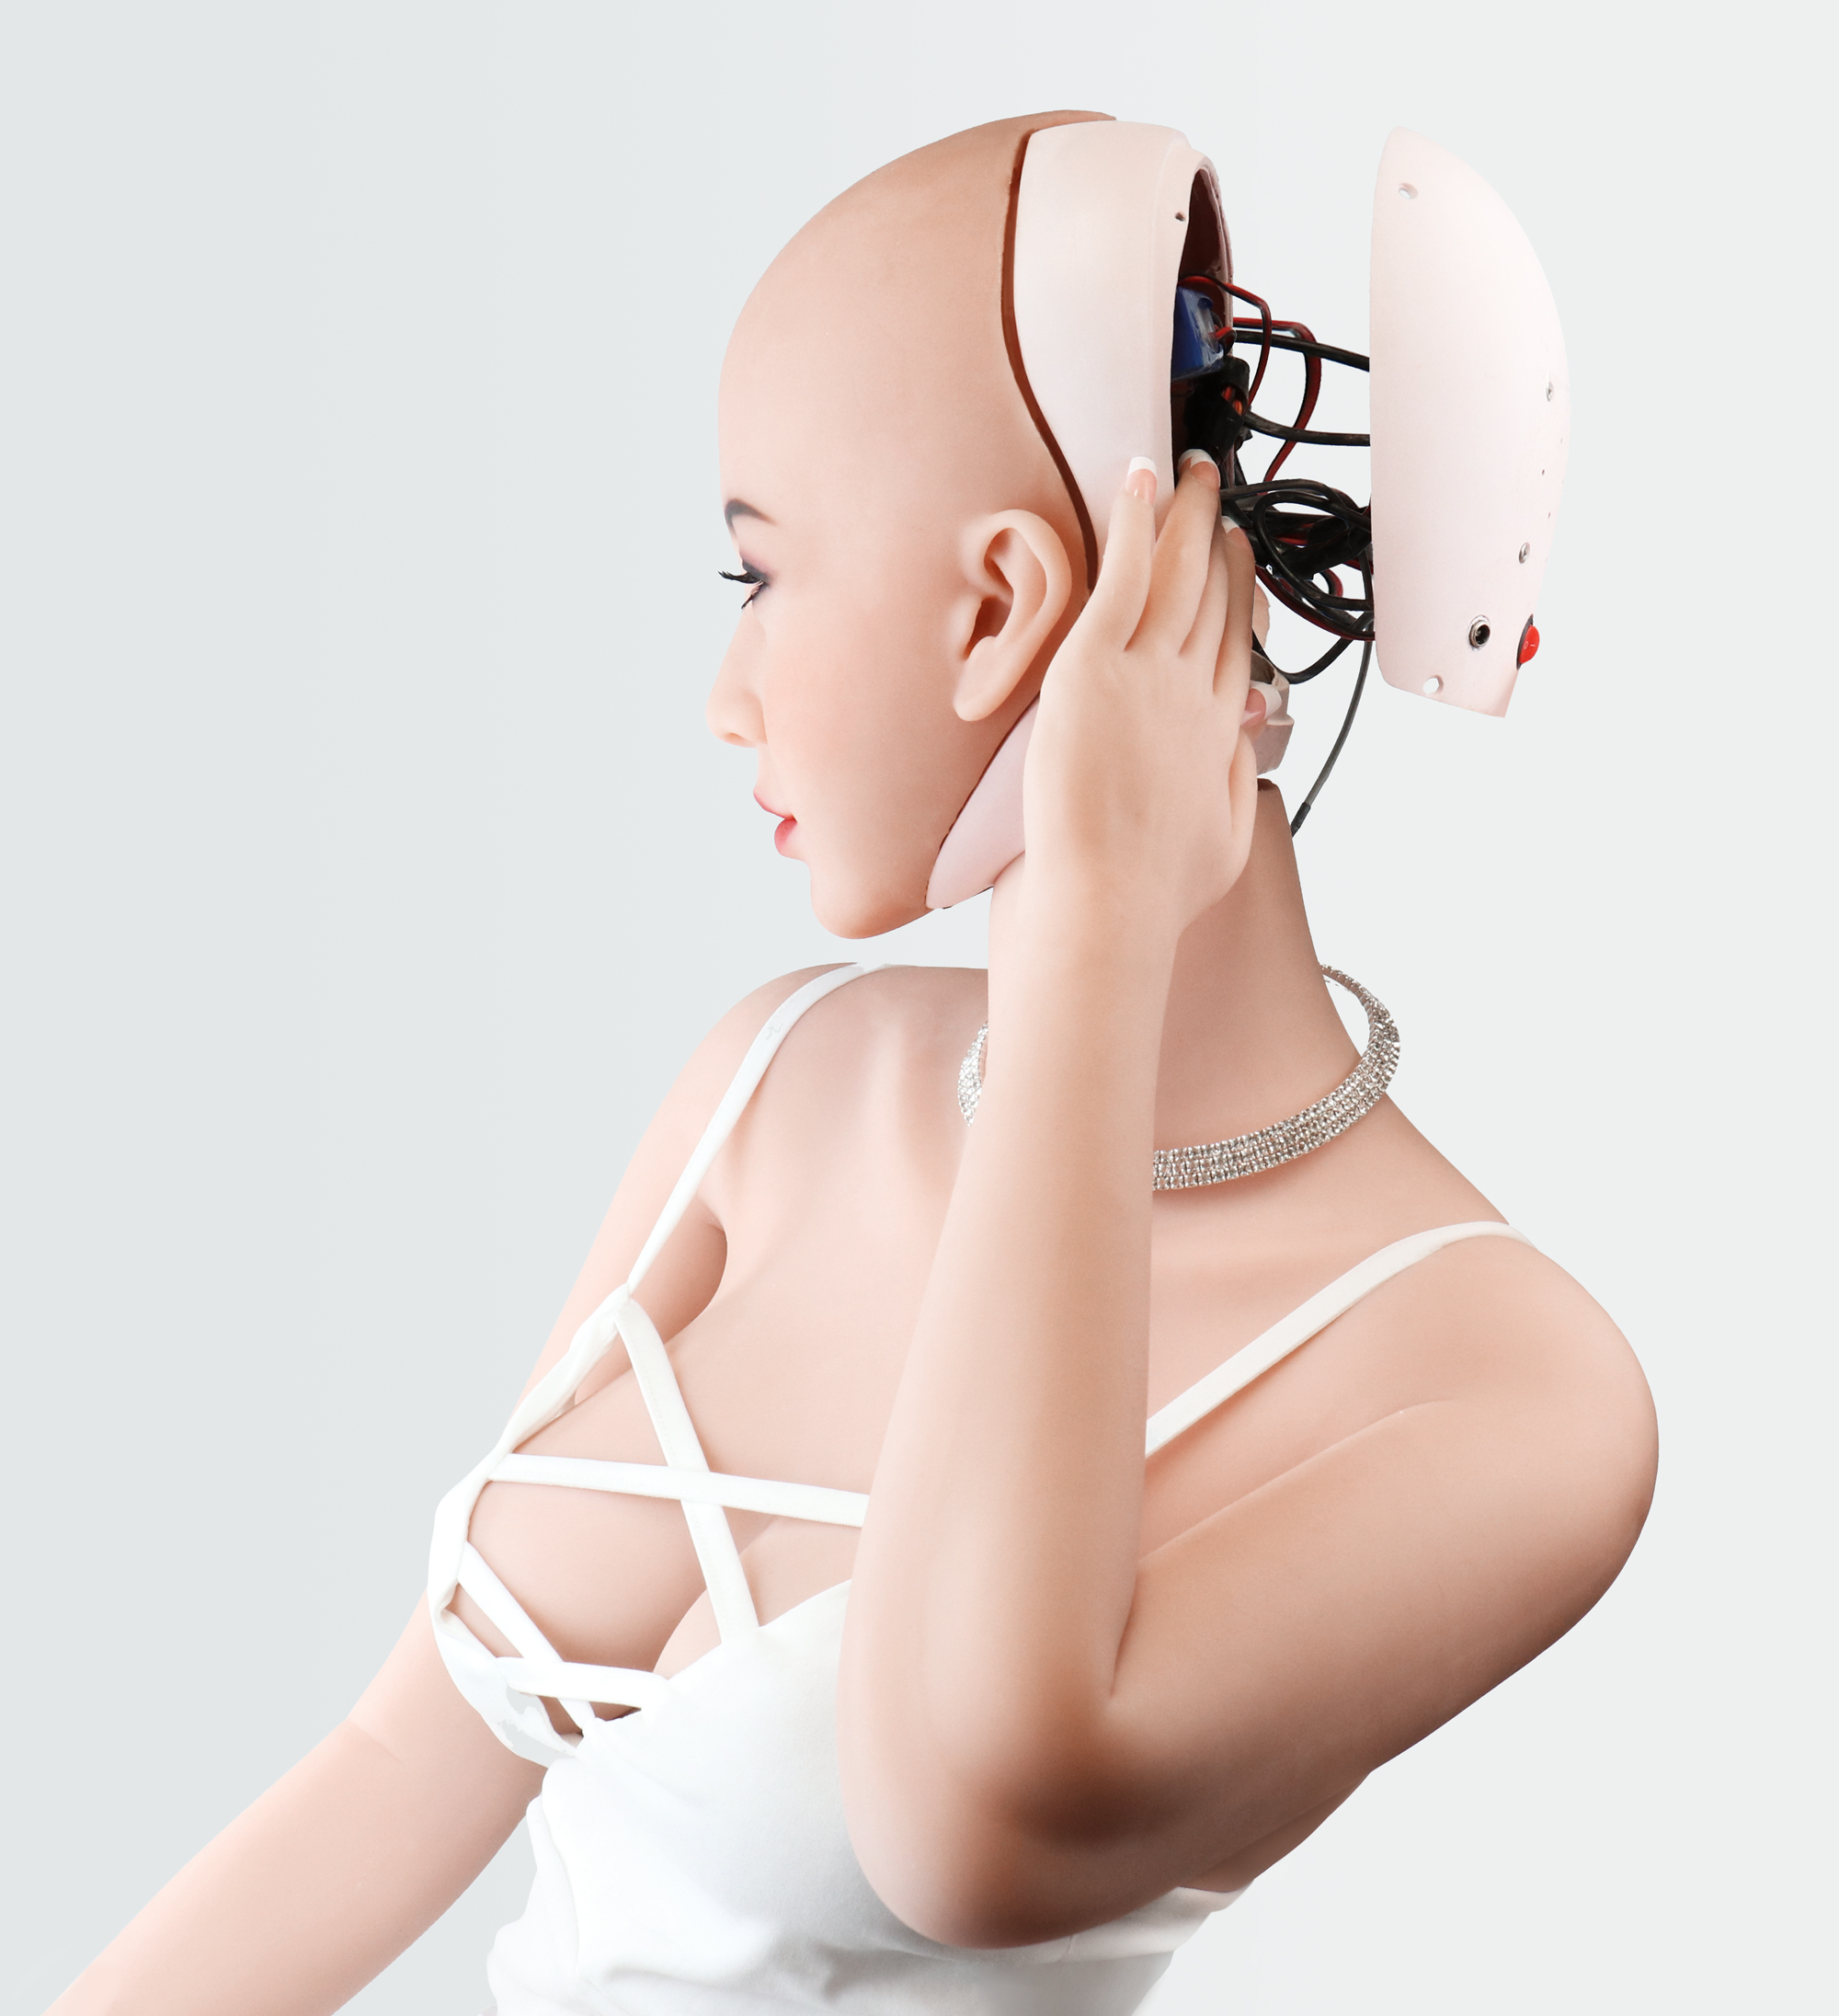 mytenga-doll-bv-sex-robot